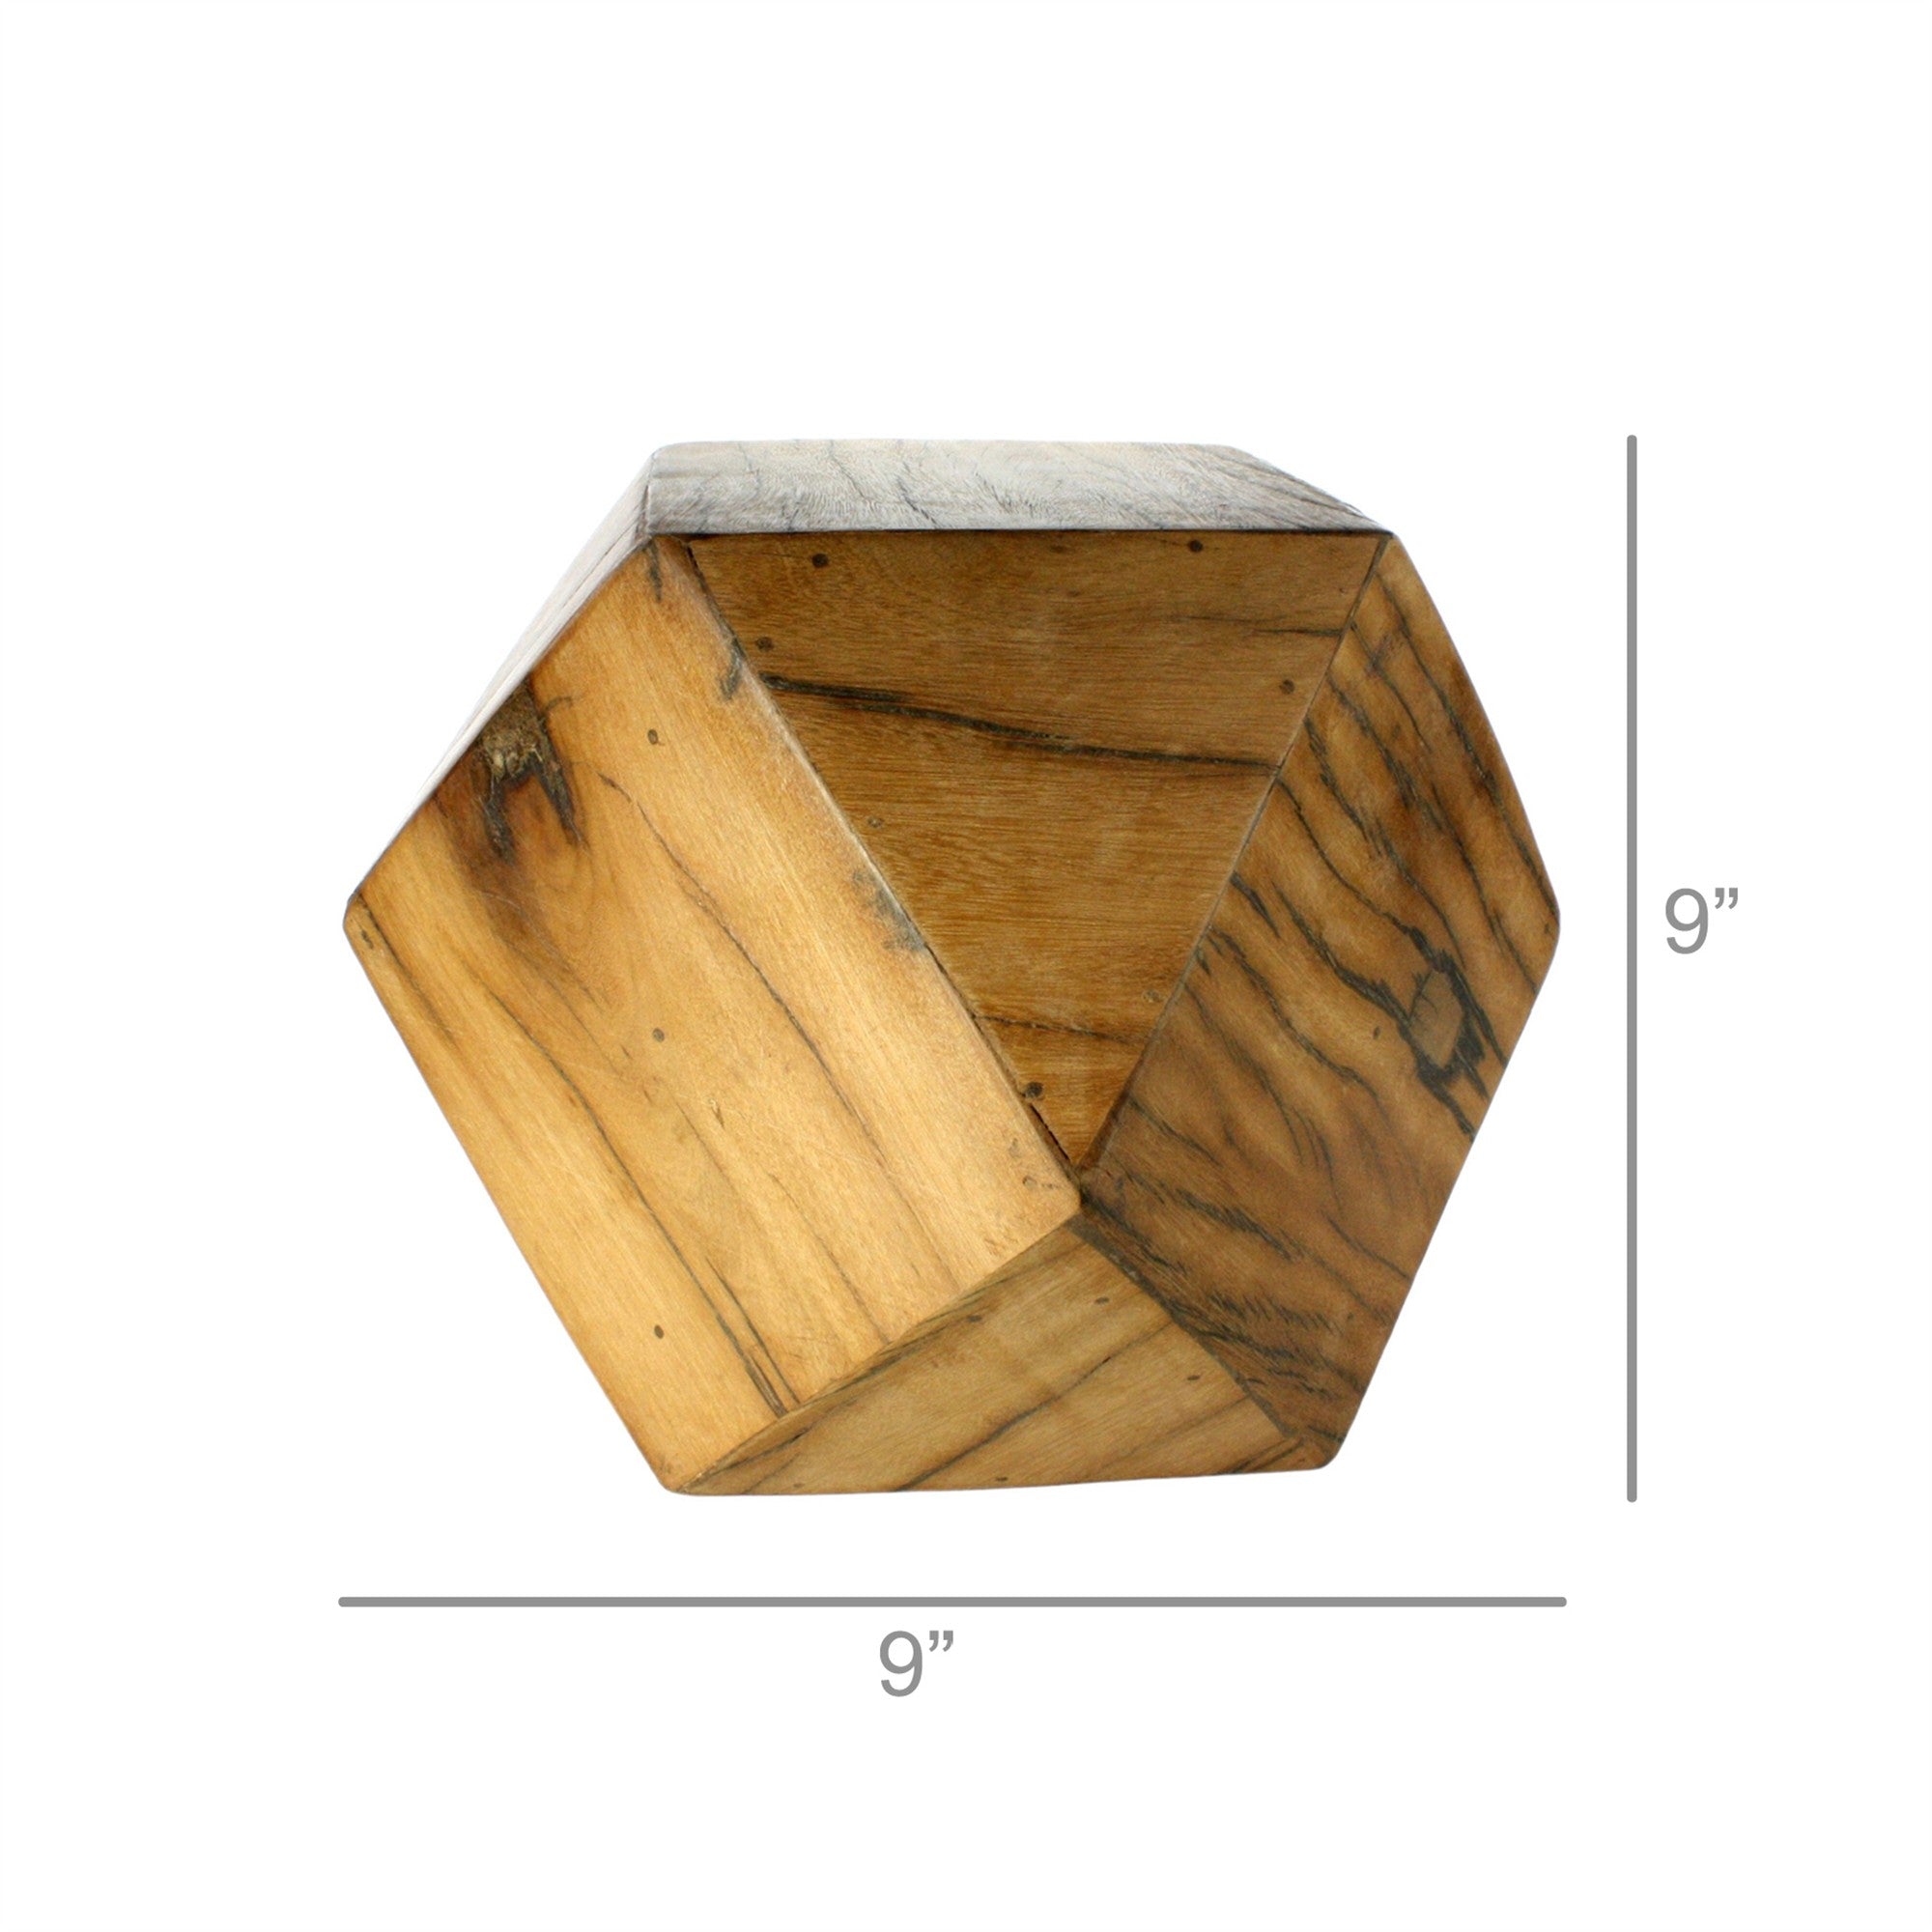 Wooden Geometric Sculpture